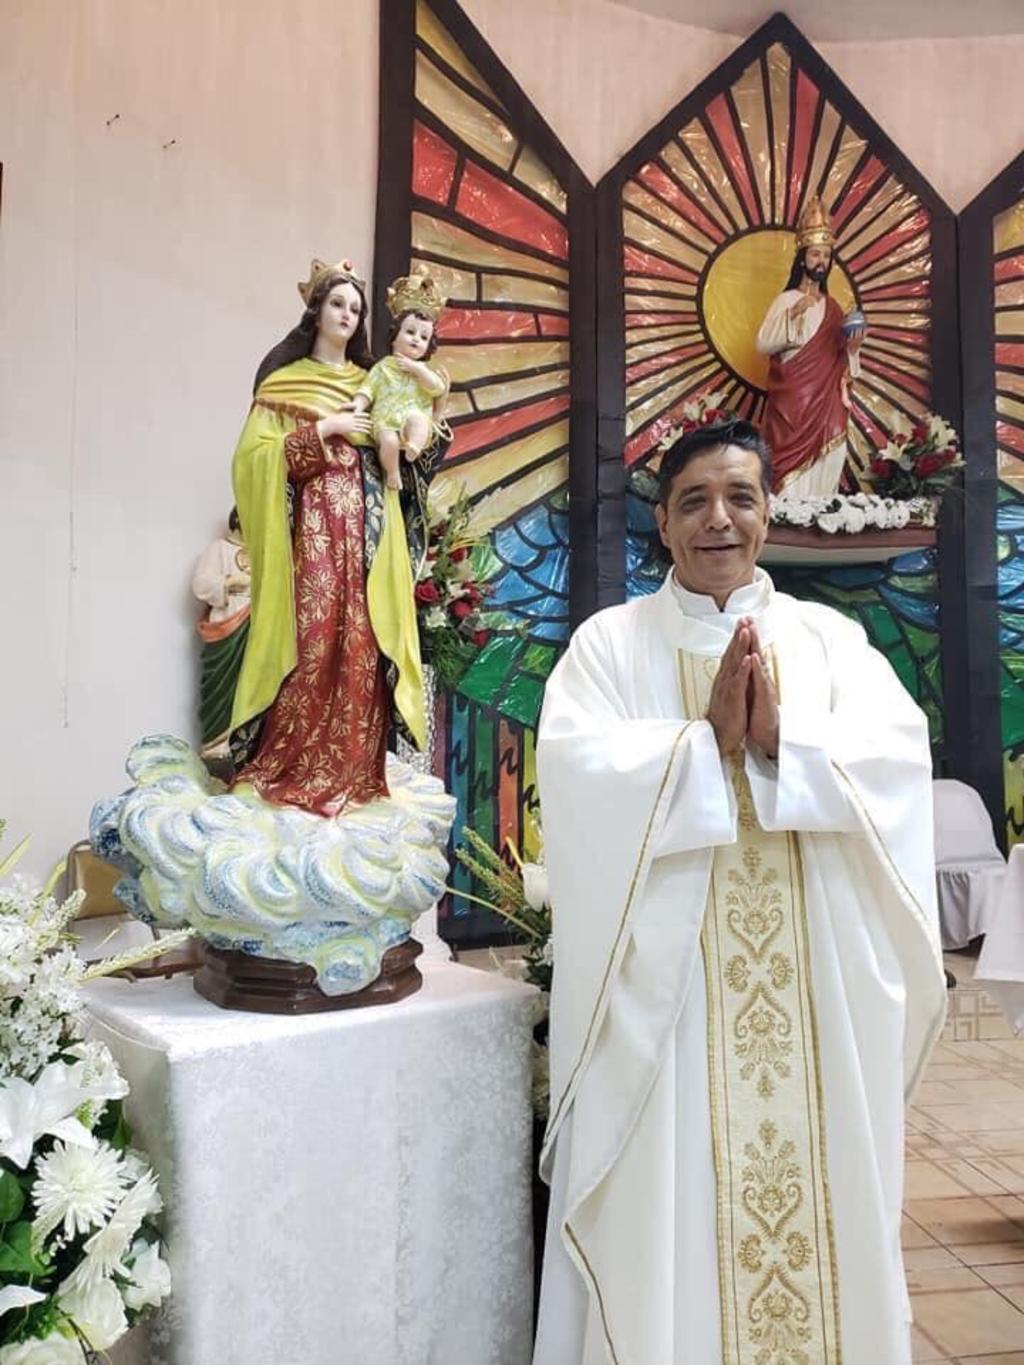 El Centro Católico Multimedial (CCM) denunció el asesinato del sacerdote José Martín Guzmán Vega, que pertenecía a la diócesis de Matamoros, en Tamaulipas. (TWITTER)